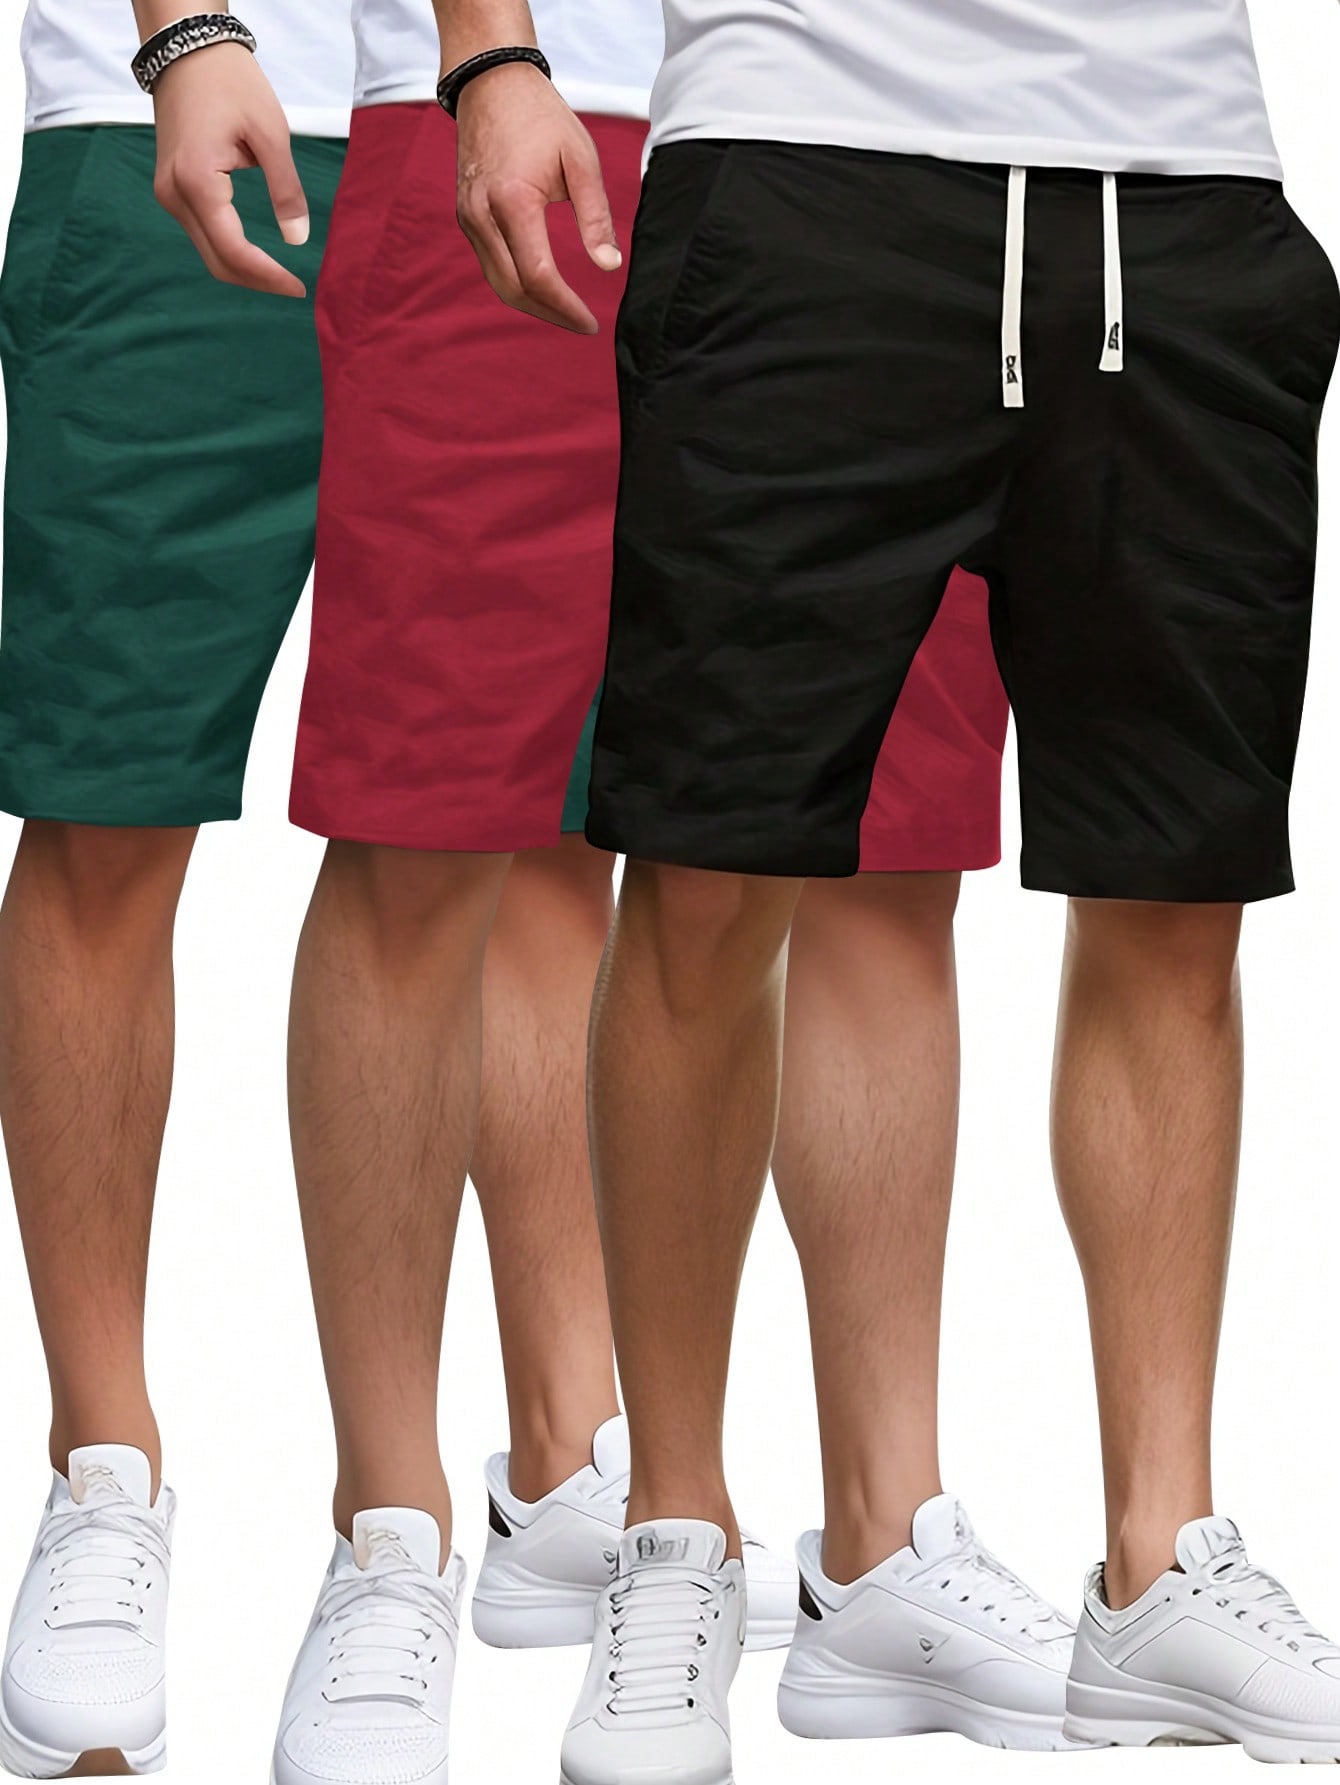 3 шт./компл. летние мужские однотонные шорты с эластичной резинкой на талии, многоцветный шорты твоё повседневные 44 размер